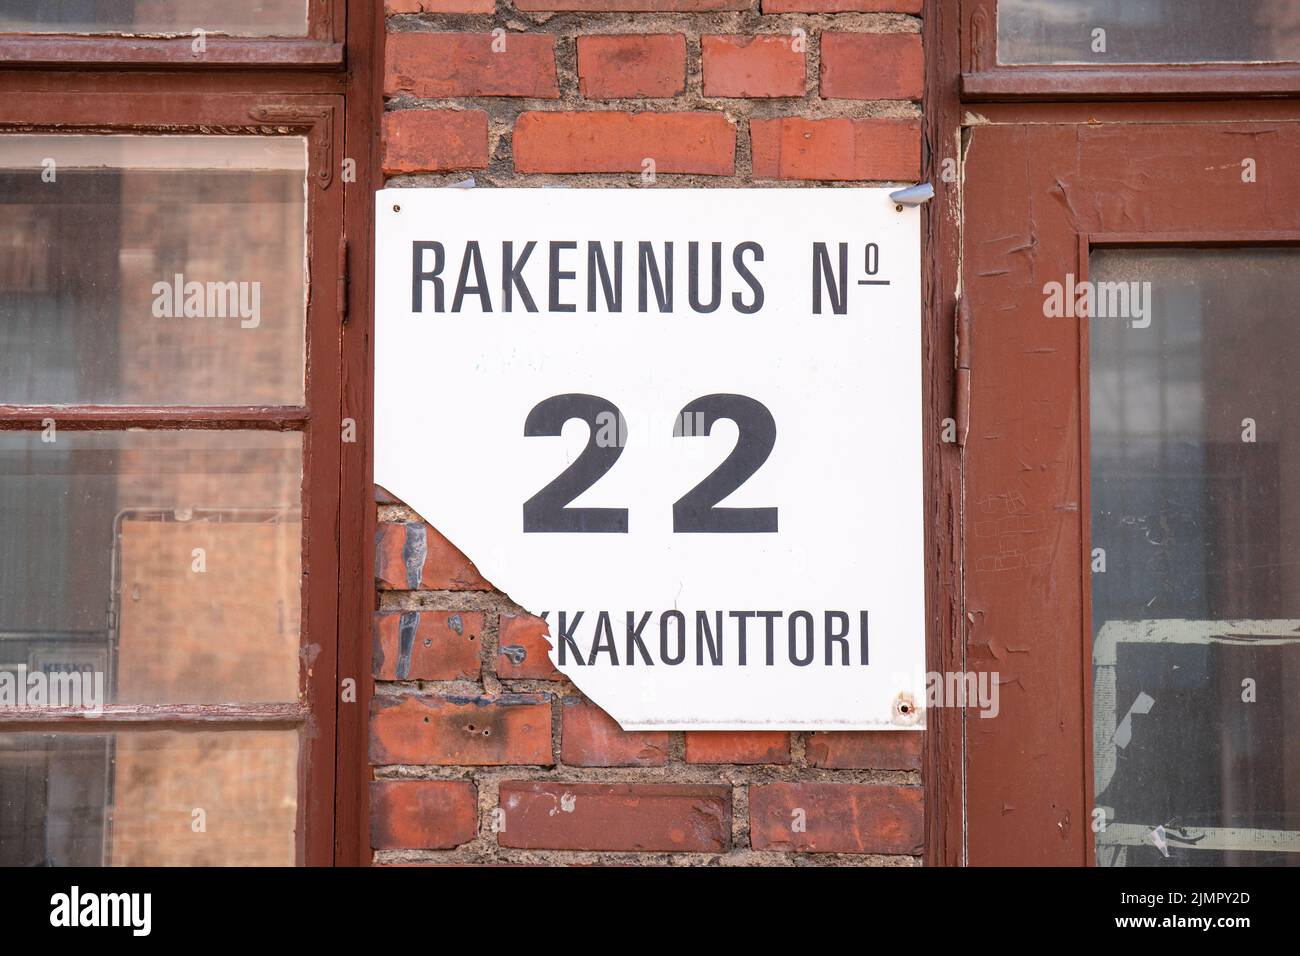 Palkkakonttori. Cartel o cartel viejo roto en la pared del edificio de oficinas del astillero en el distrito Munkkkkisaari de Helsinki, Finlandia. Foto de stock